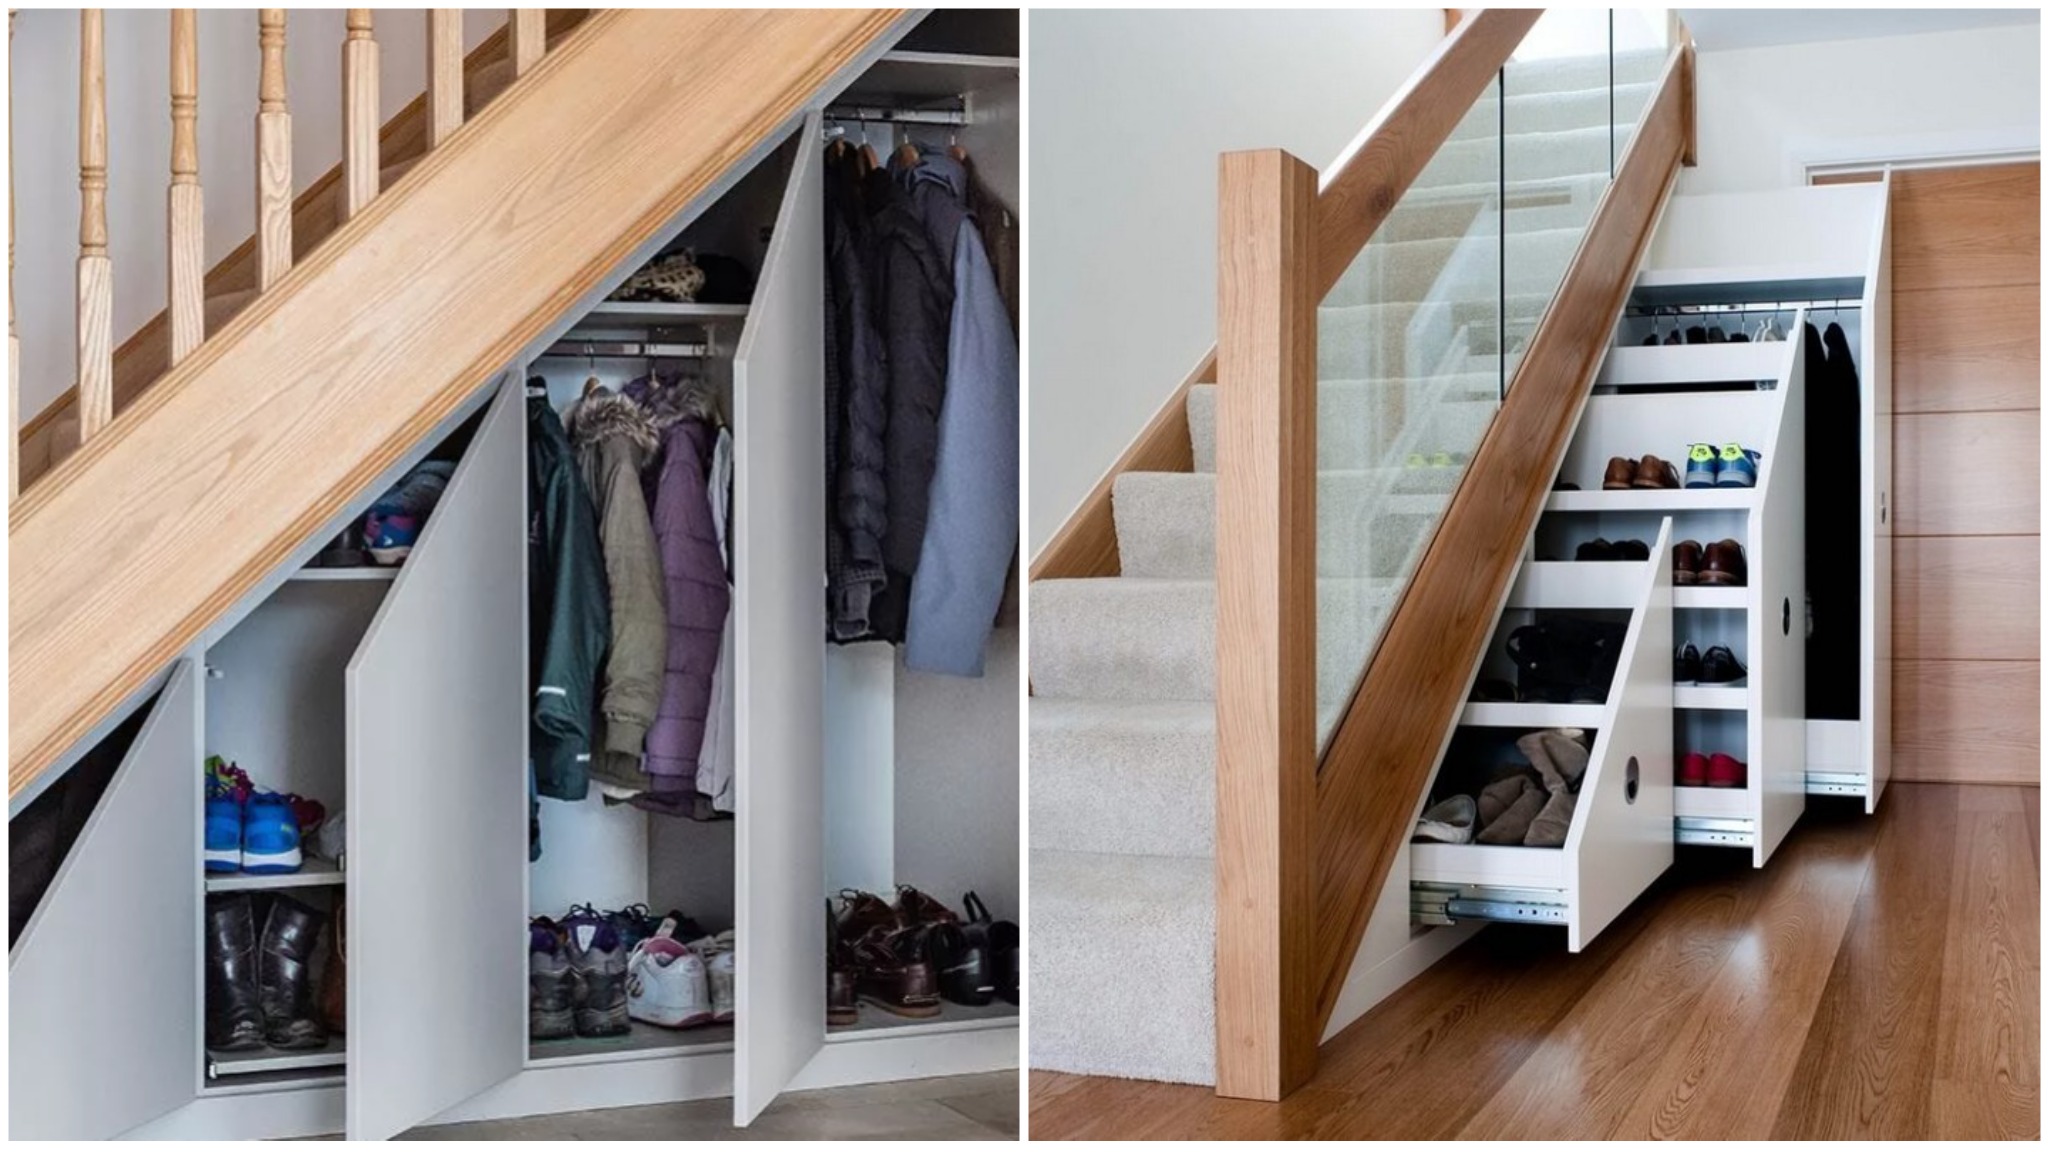 Как выбрать и разместить встроенный шкаф под лестницей: виды, дизайн, изготовление